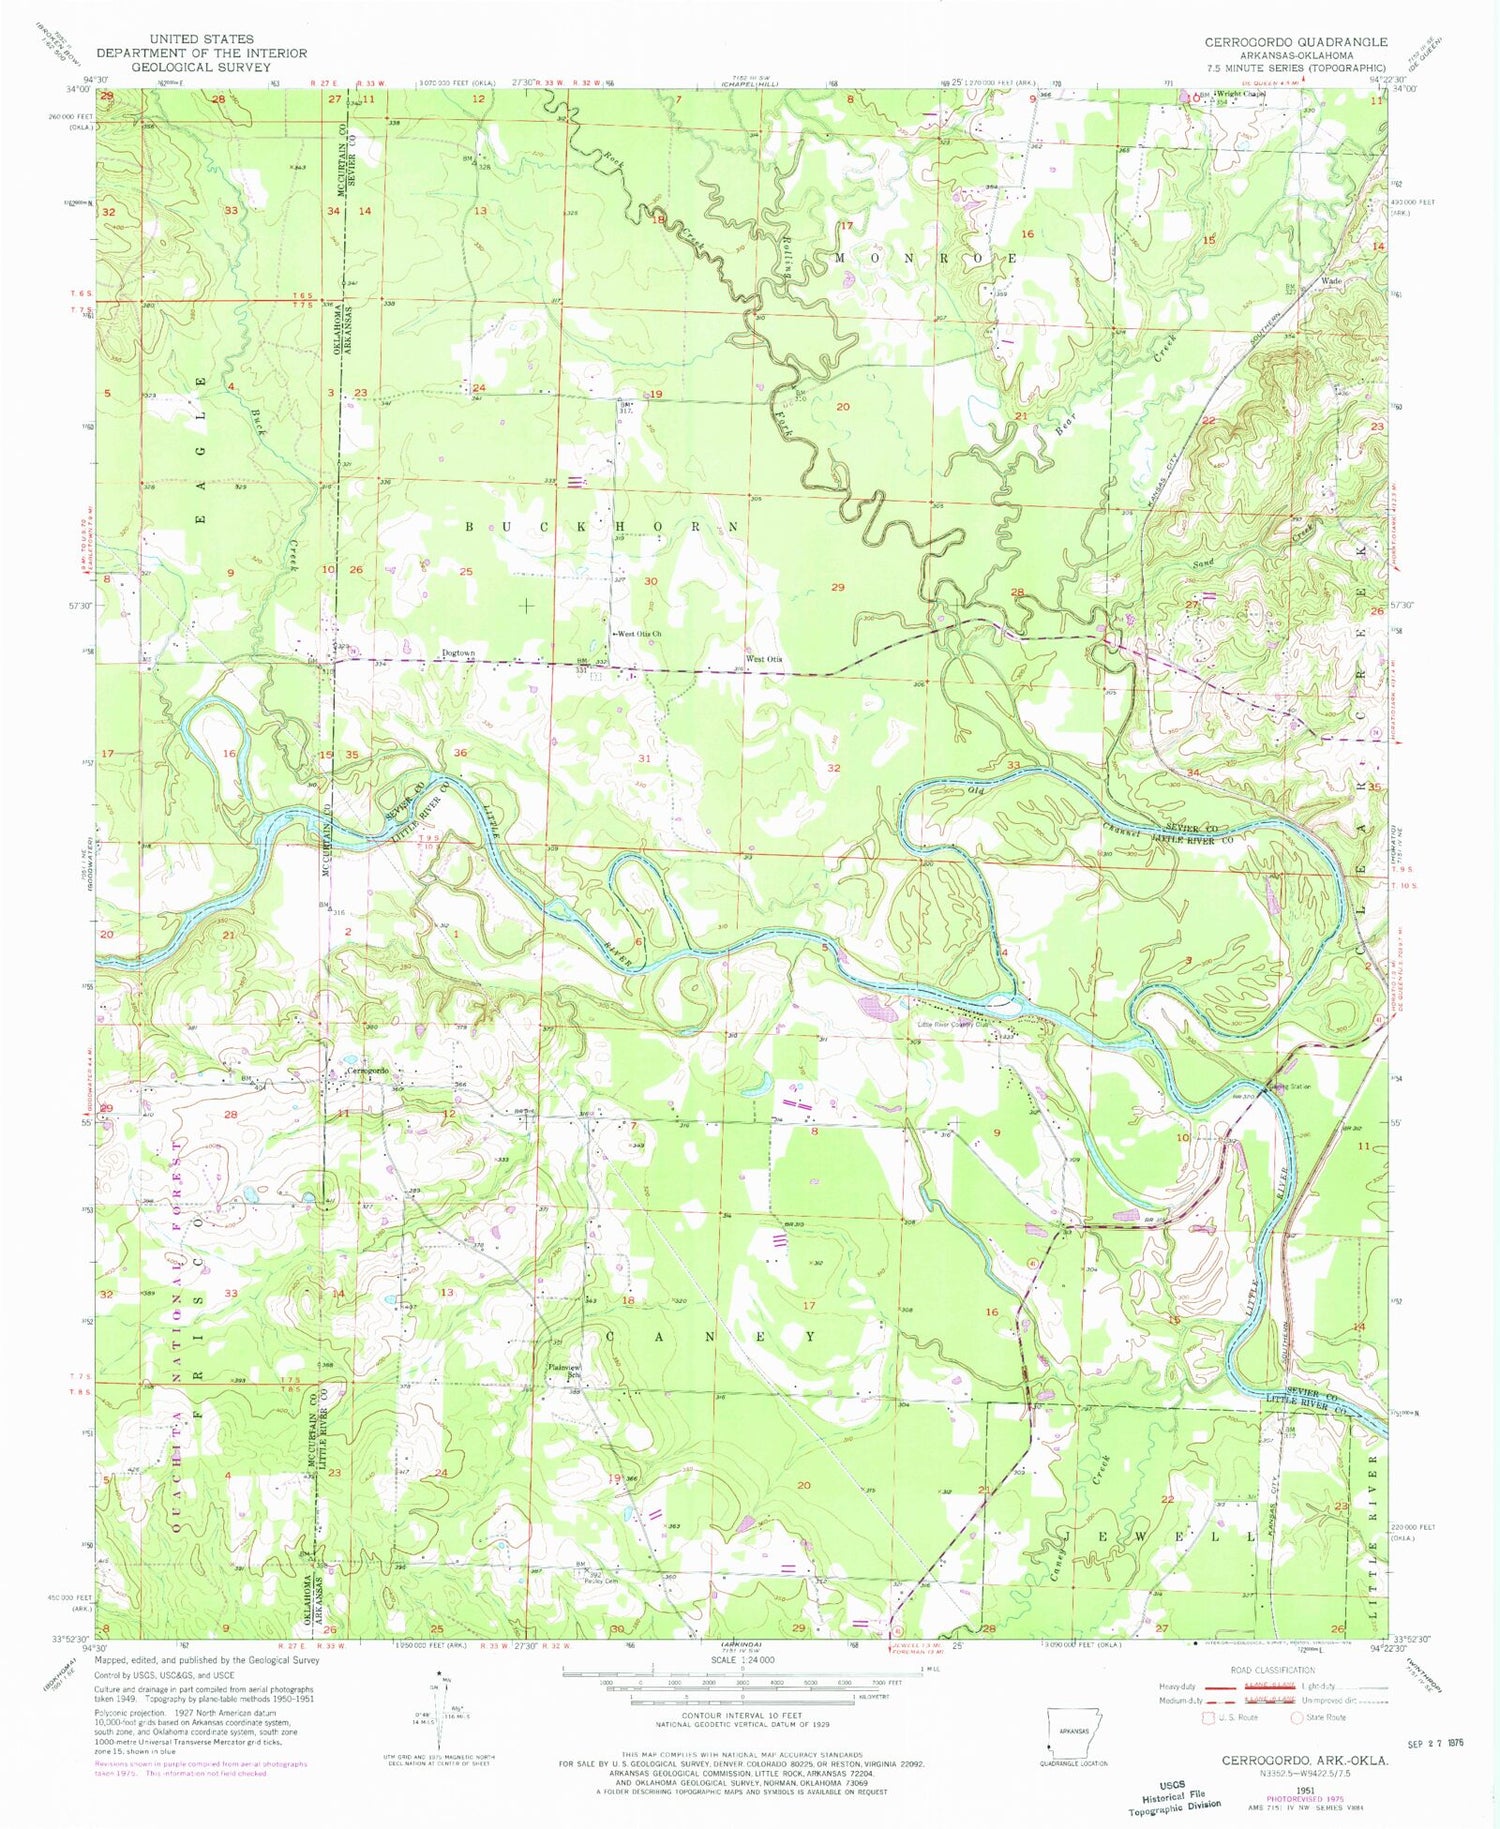 Classic USGS Cerrogordo Arkansas 7.5'x7.5' Topo Map Image